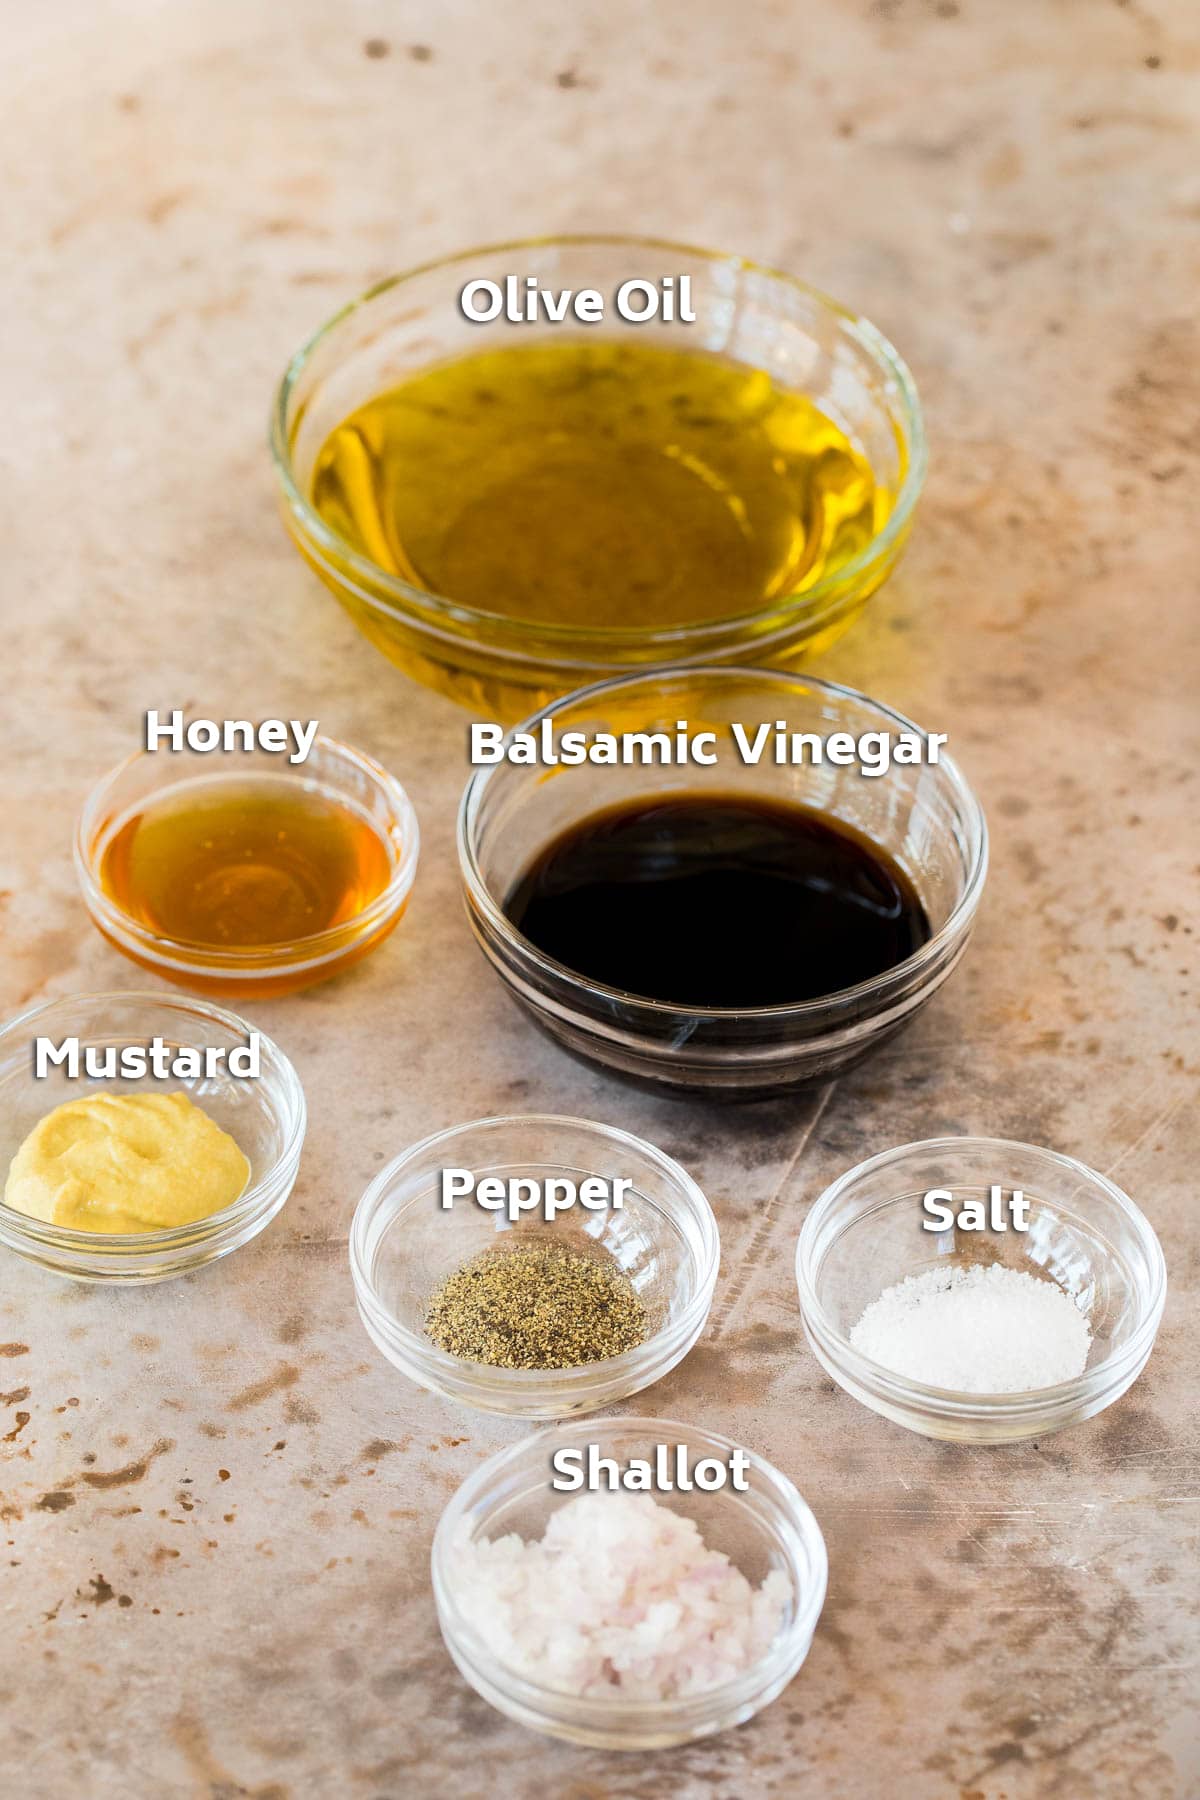 Bowls of ingredients including oil, vinegar and seasonings.